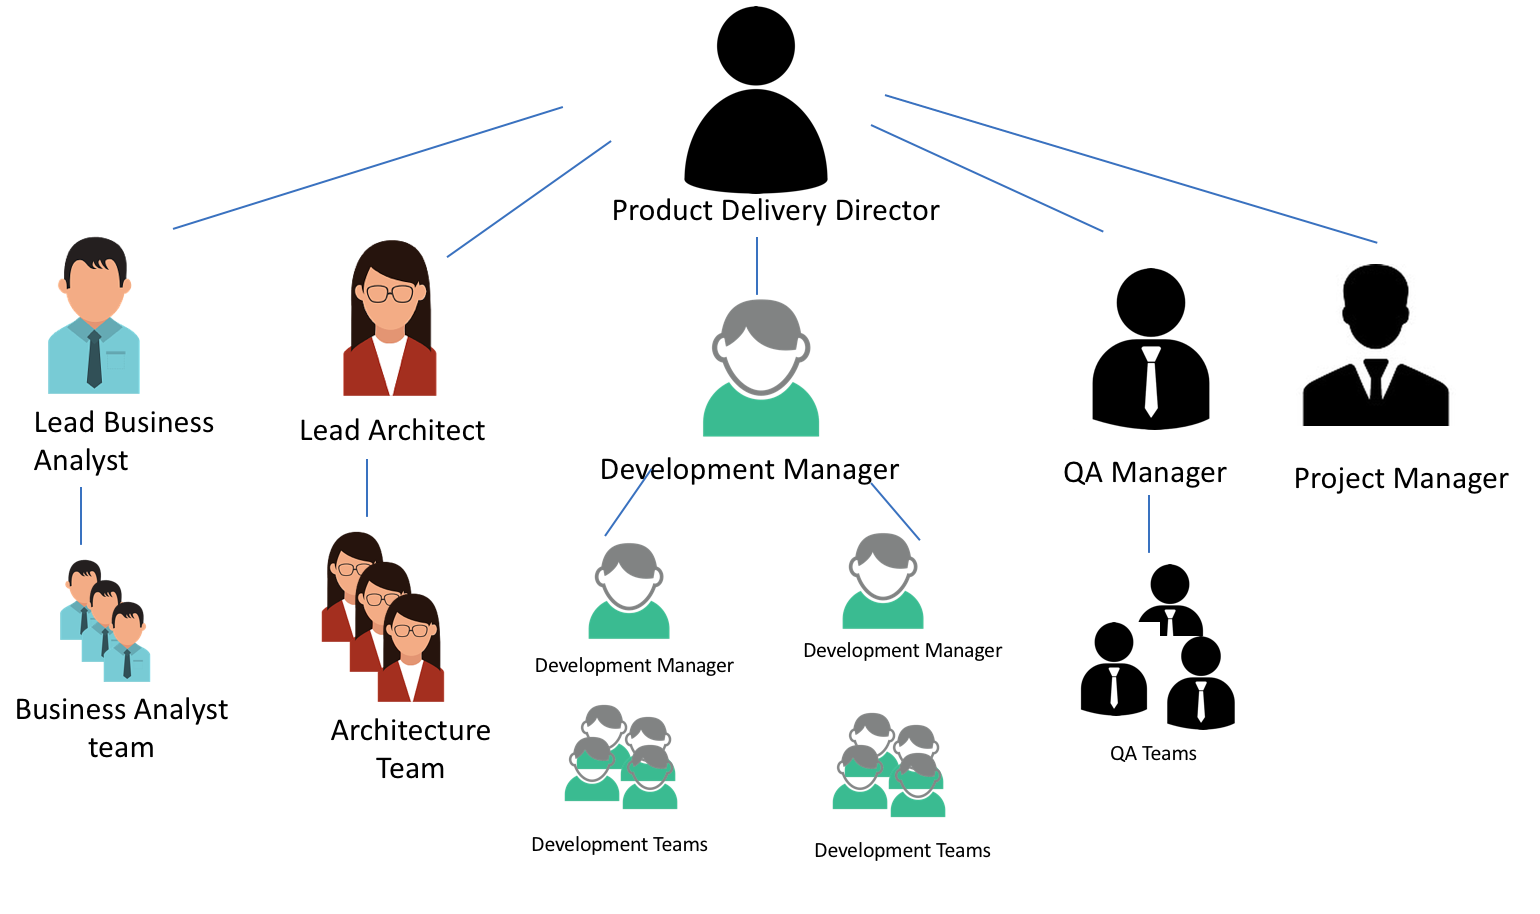 Original organizational structure